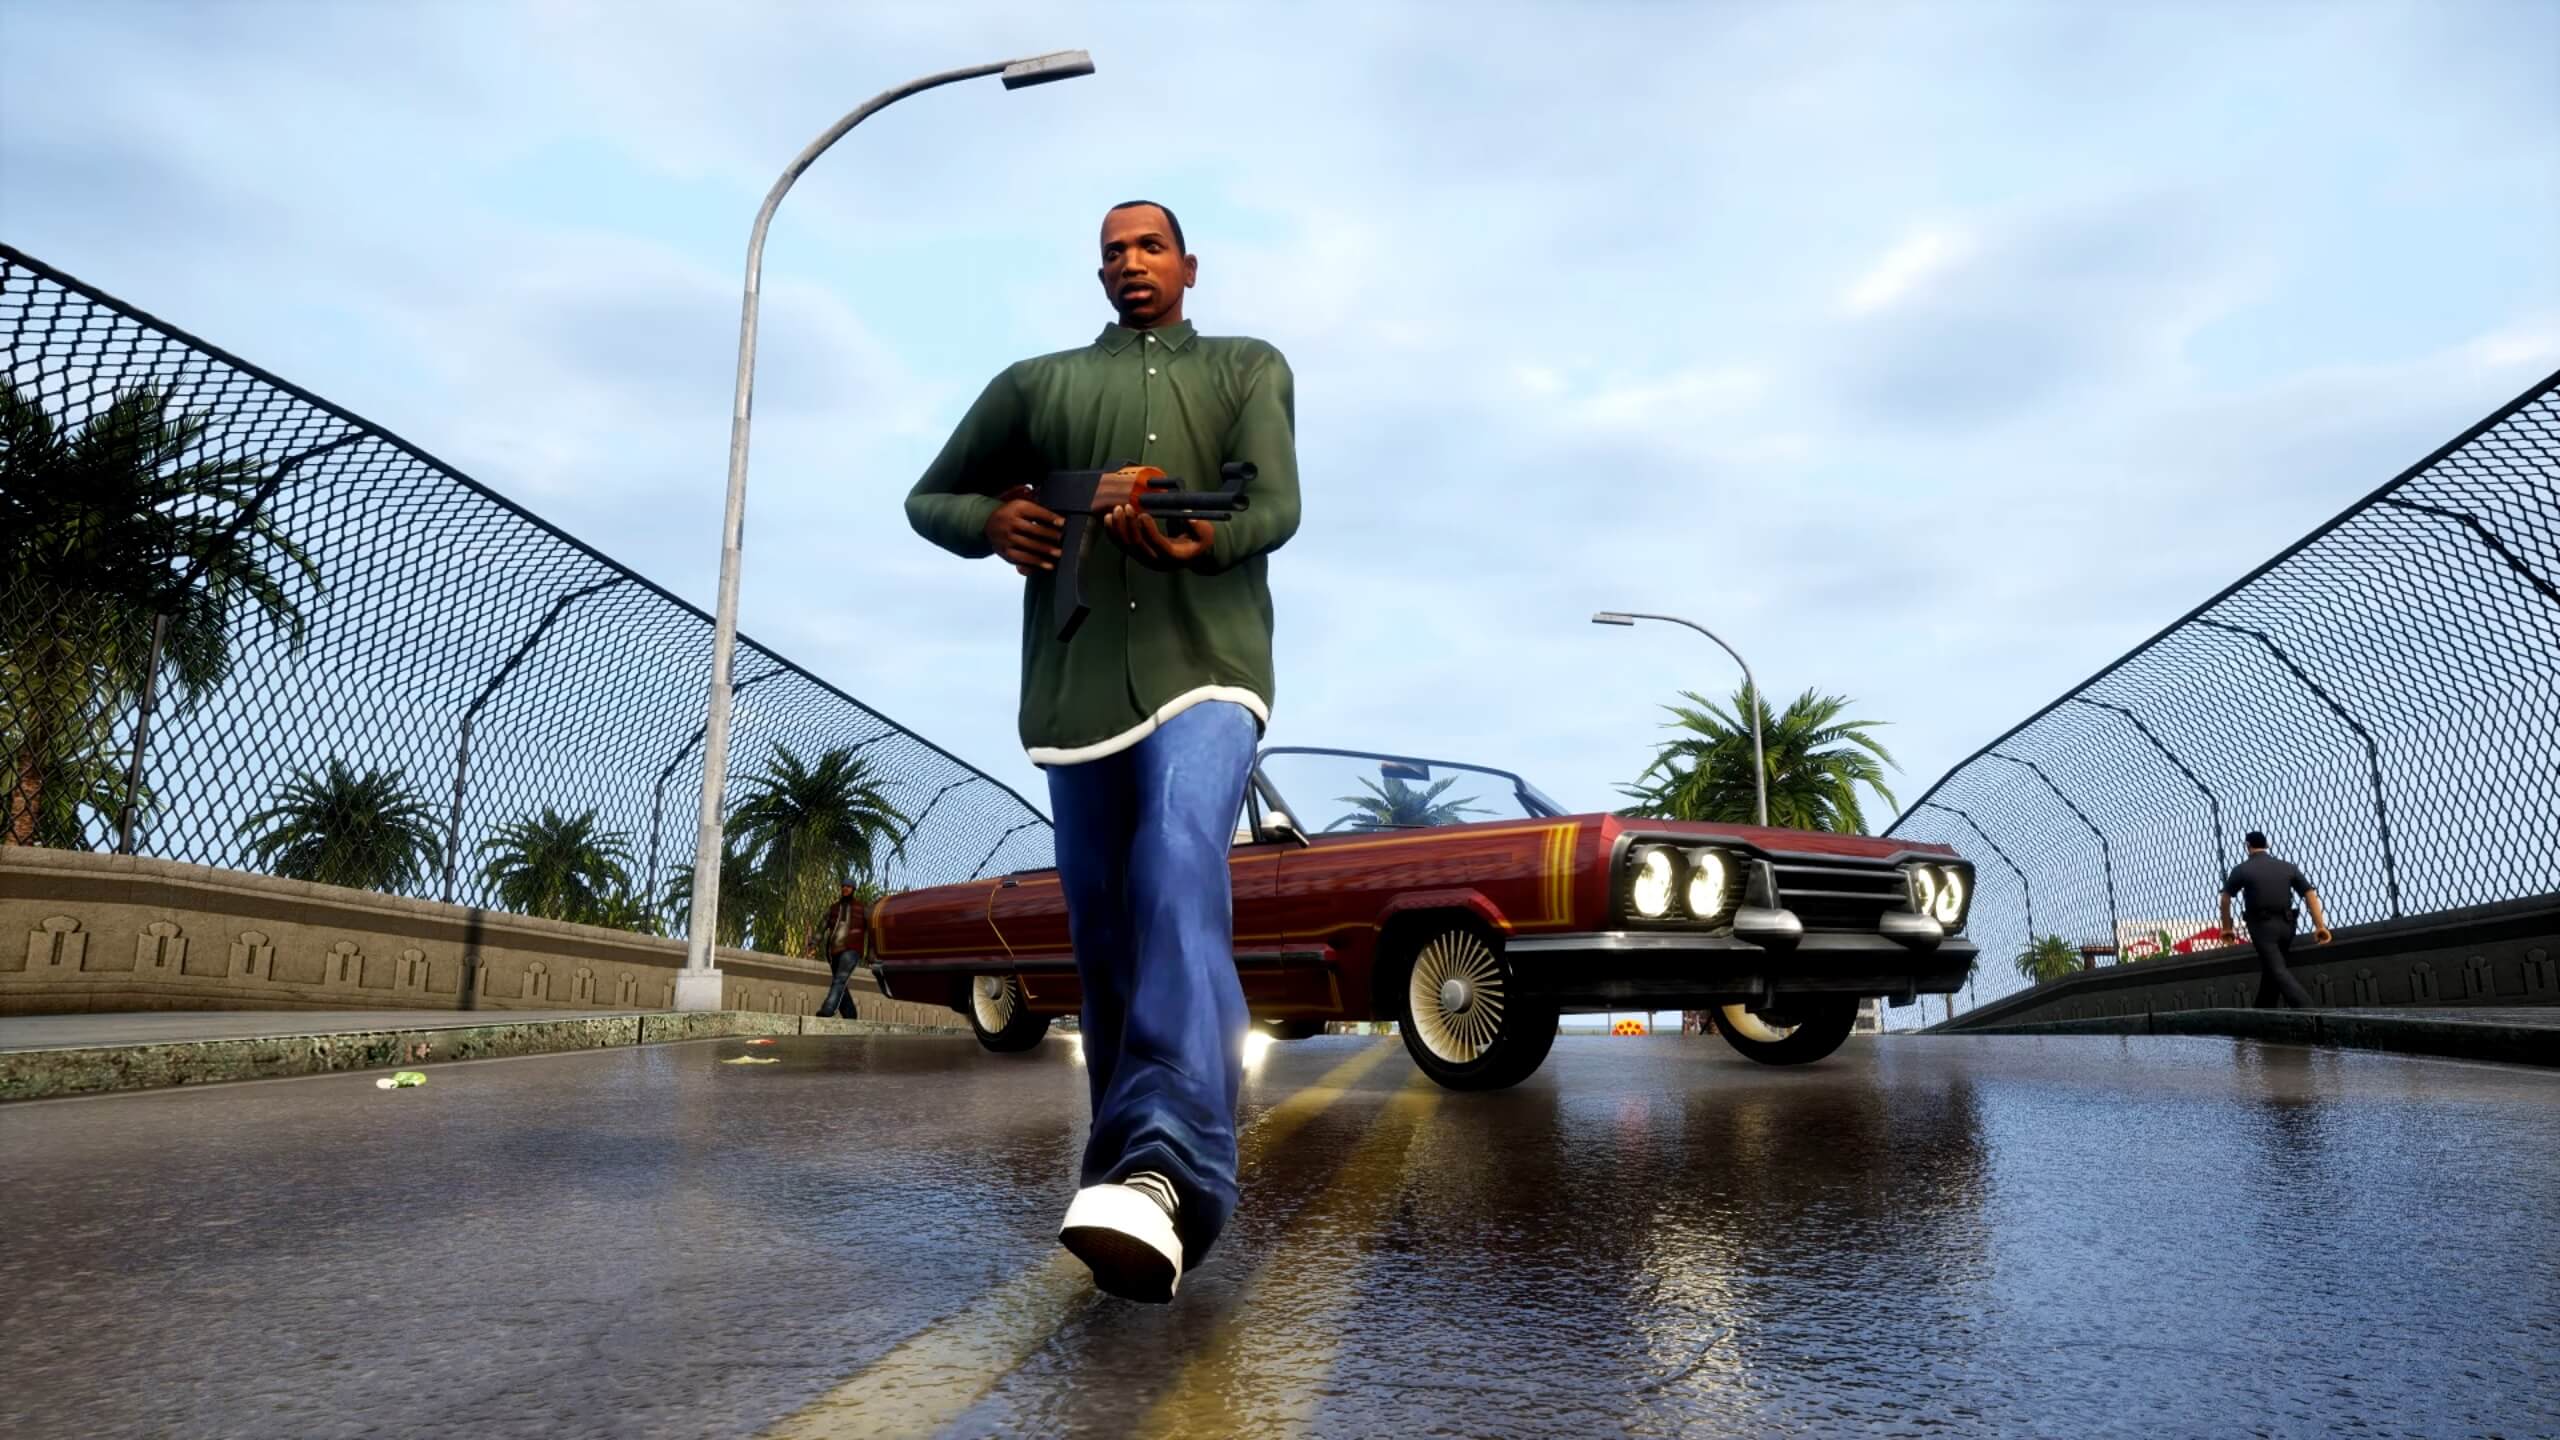 Grand Theft Auto III - Original vs Definitive Edition Comparison 